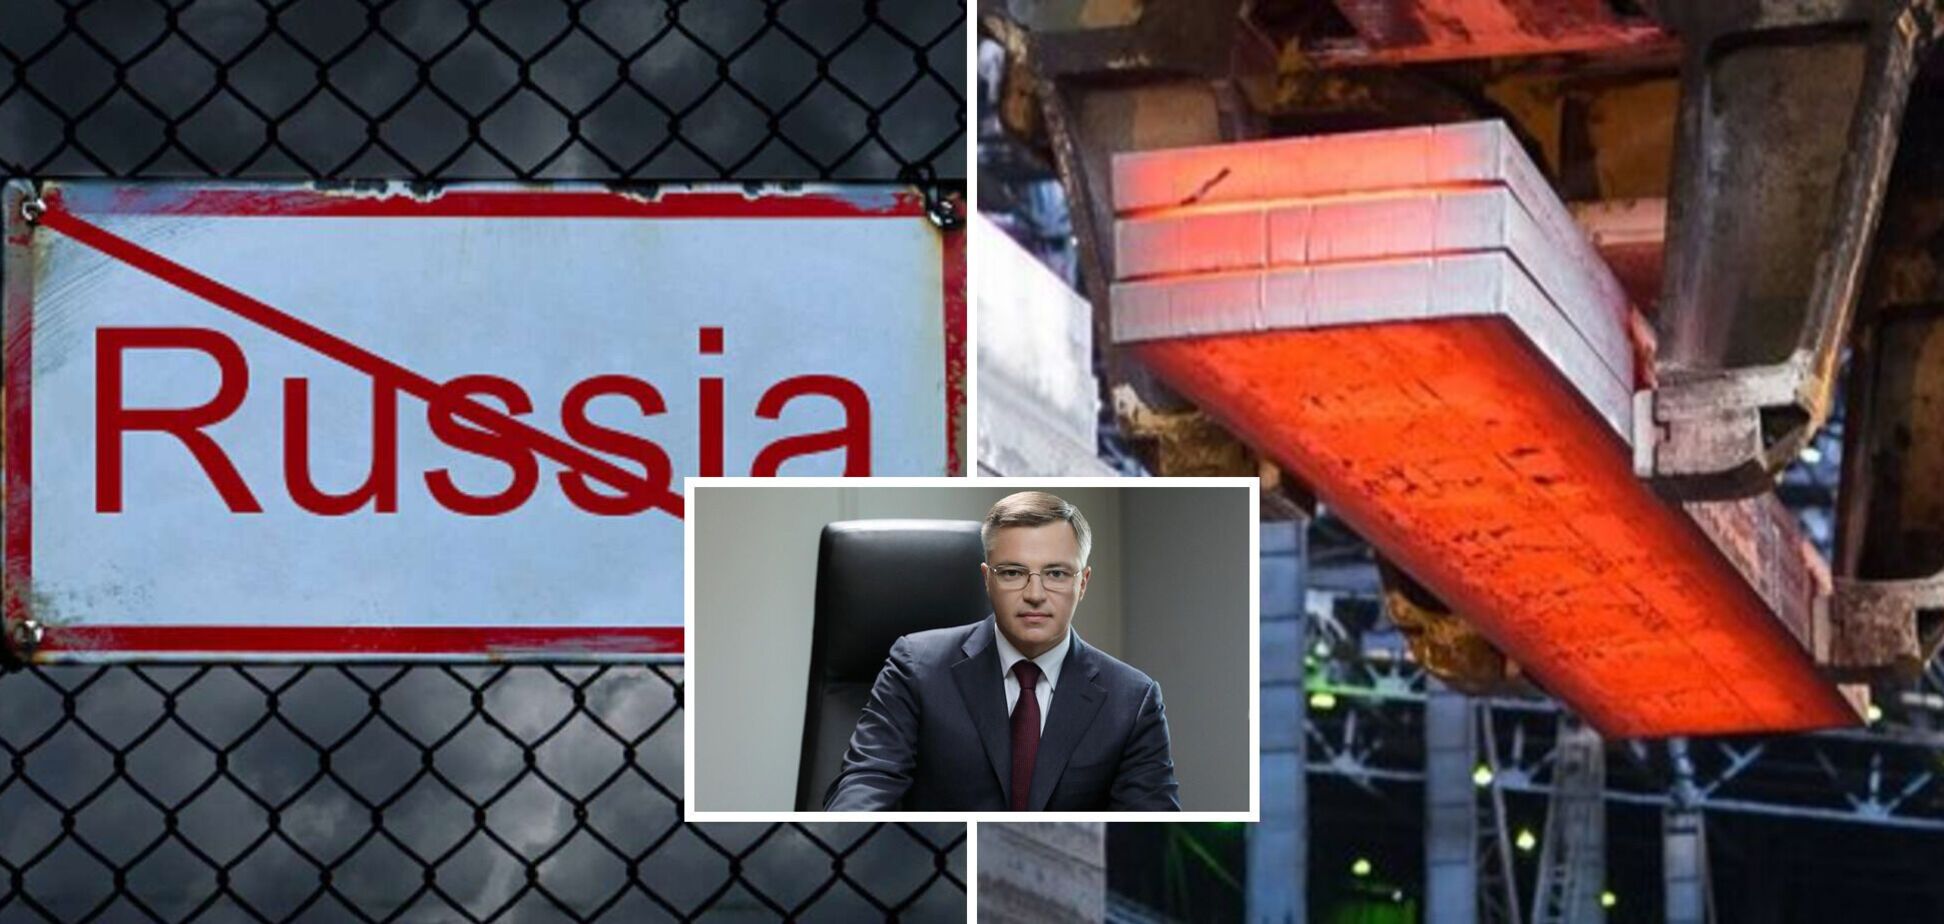 Росія продовжує імпортувати металопродукцію до країн ЄС в обхід санкцій, заробляючи на свою агресію – Риженков